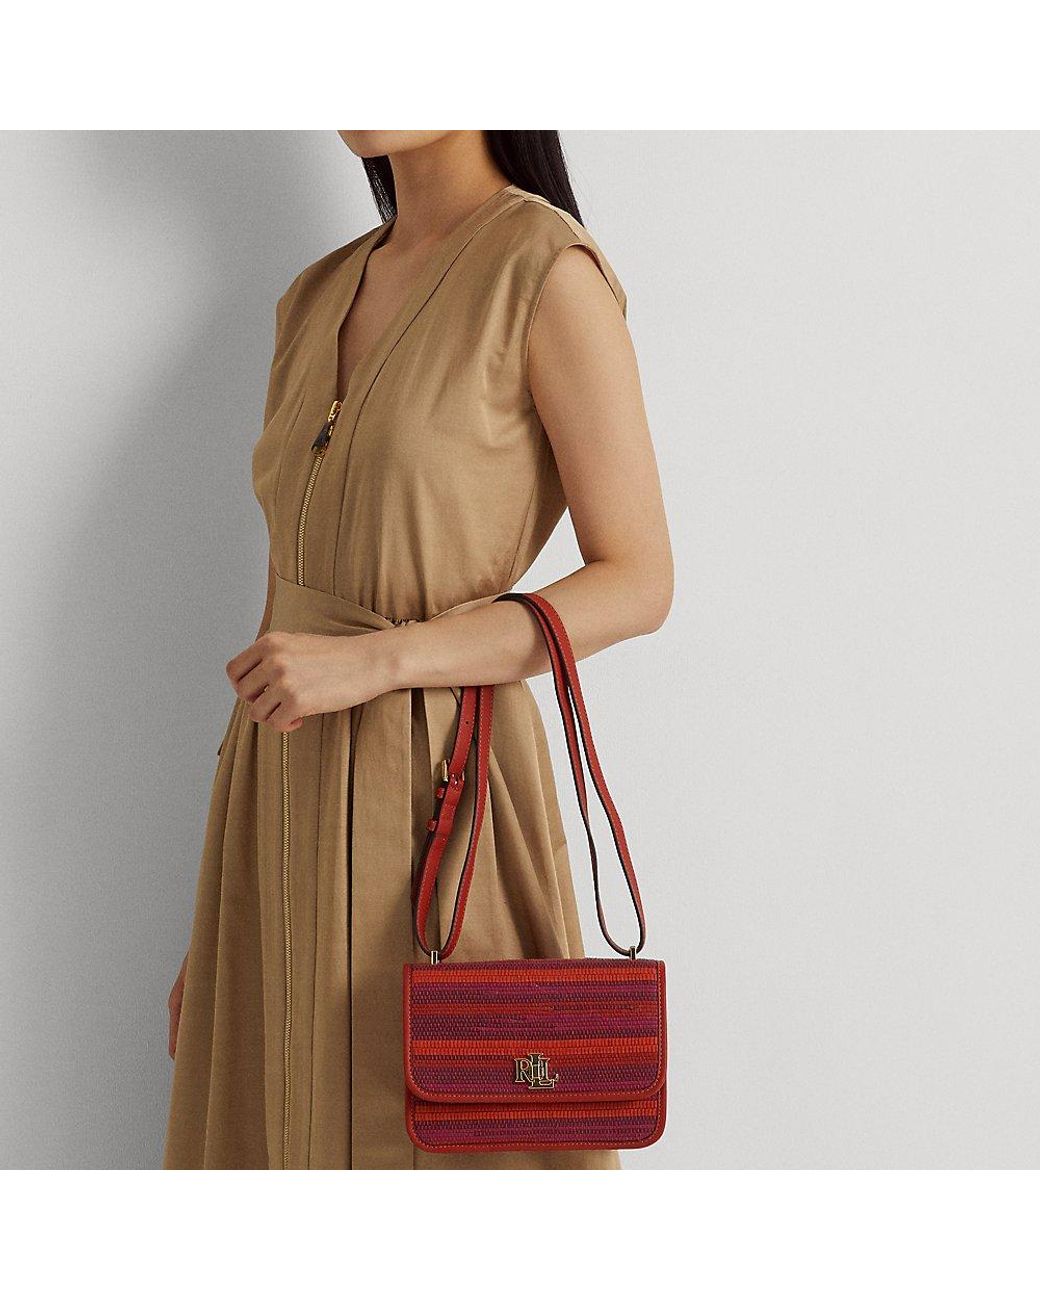 Ralph Lauren Handbags - Up to 60% OFF